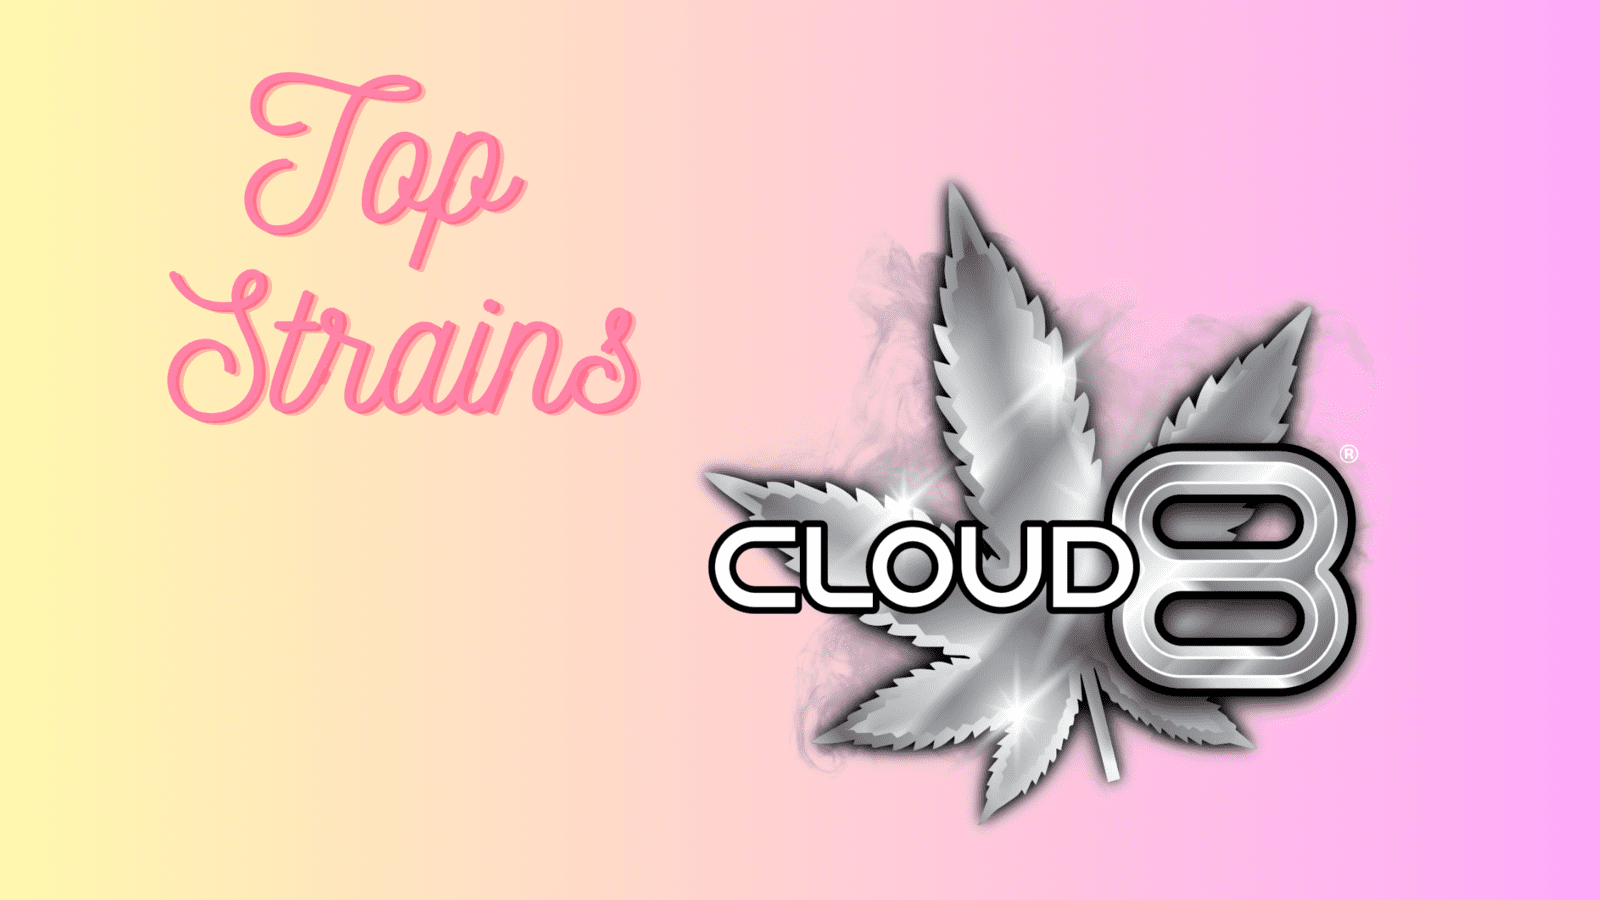 Cloud 8's Top Strains